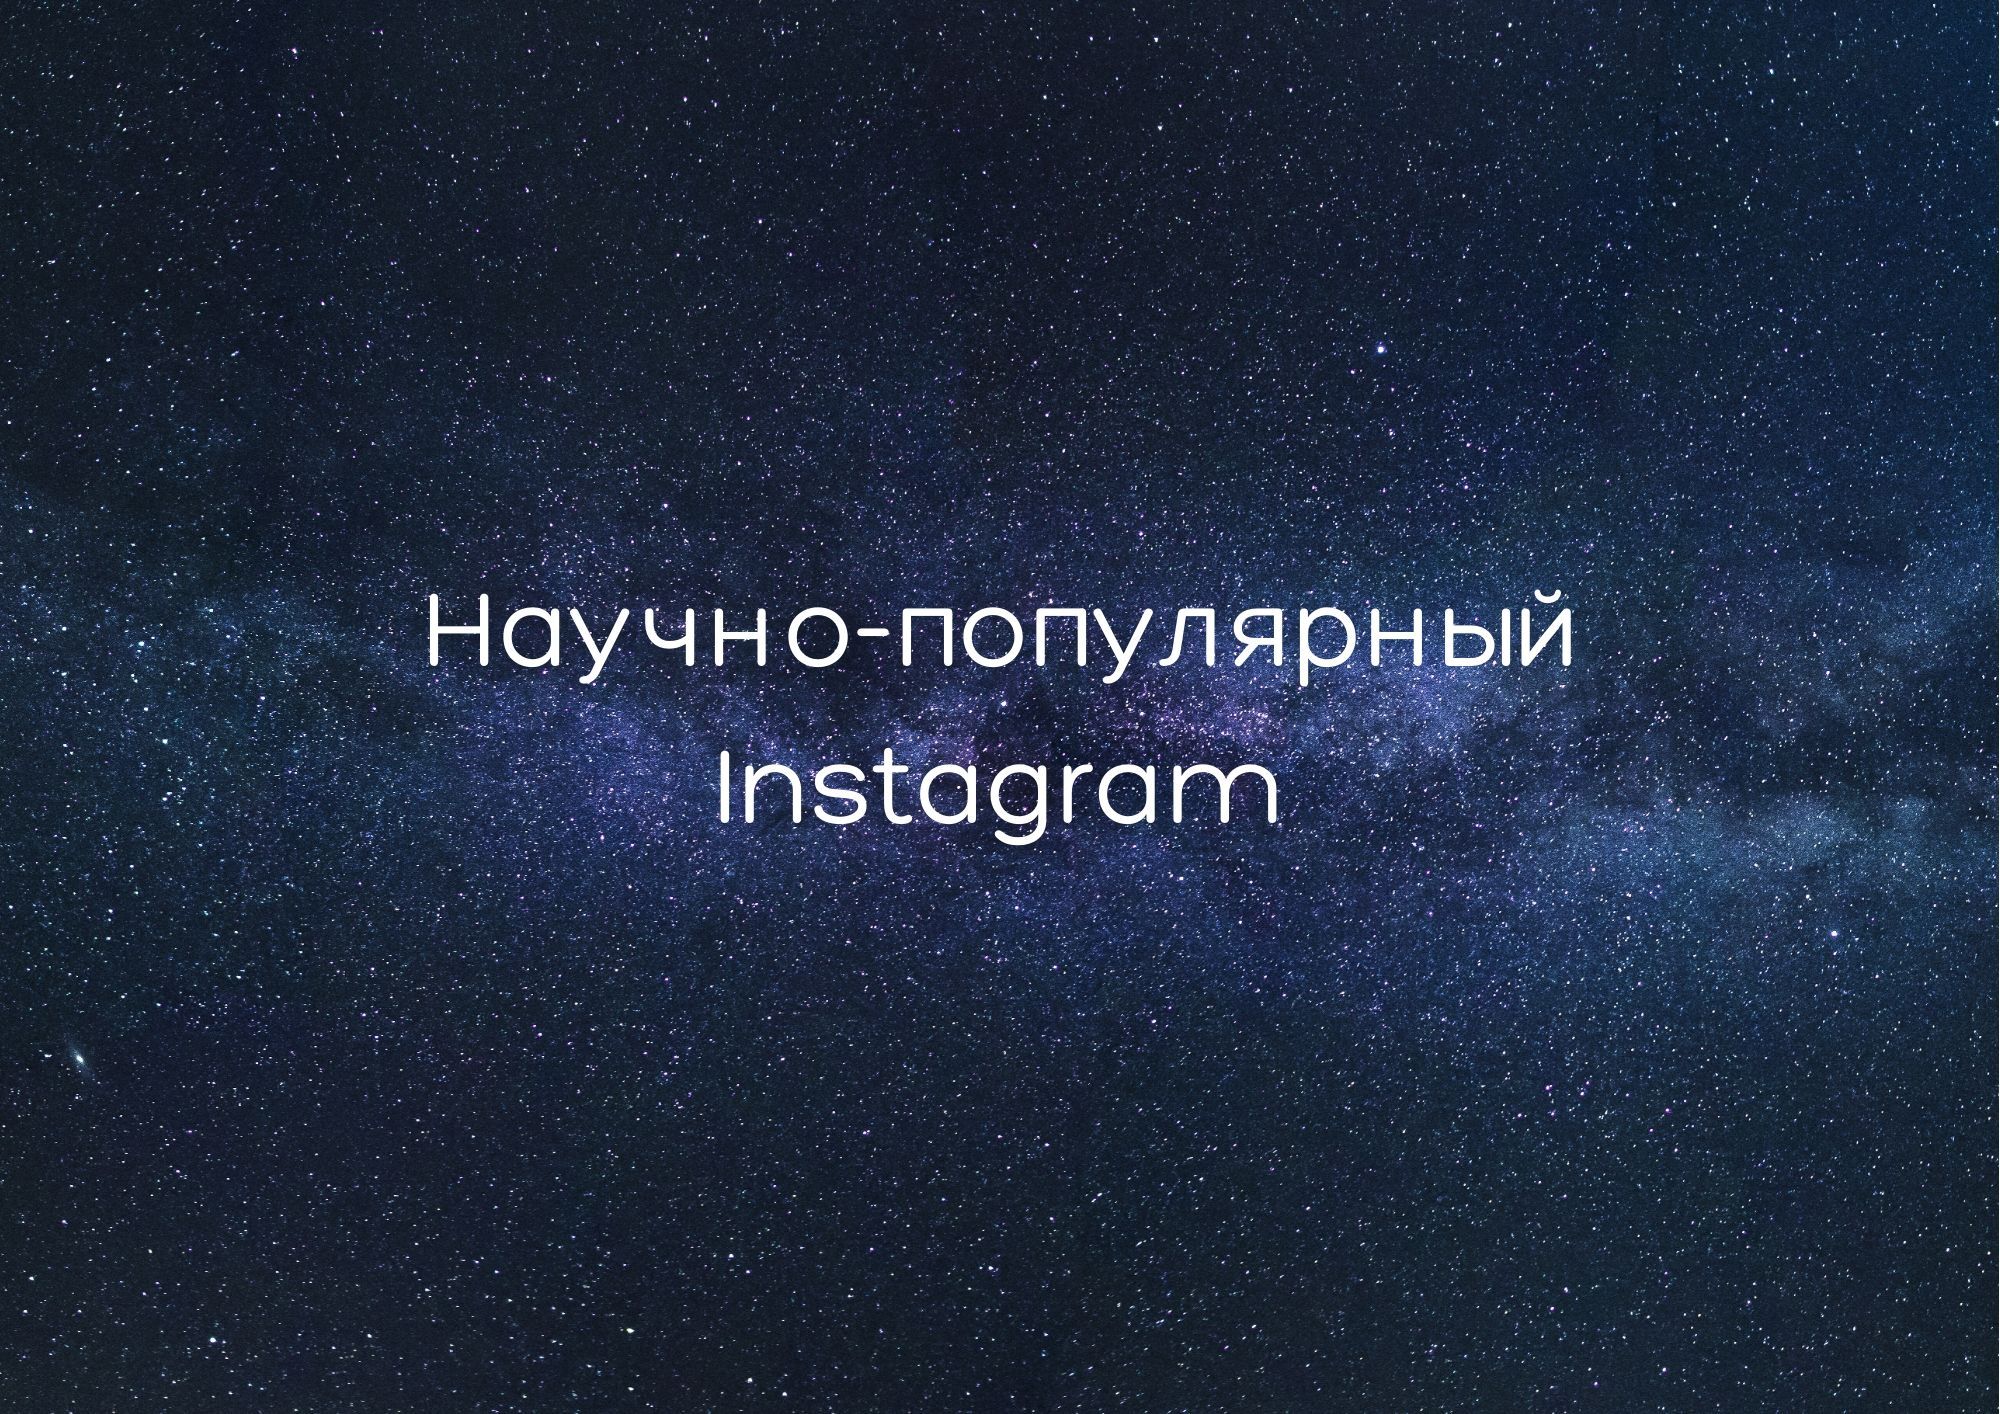 Научно-популярный Instagram*